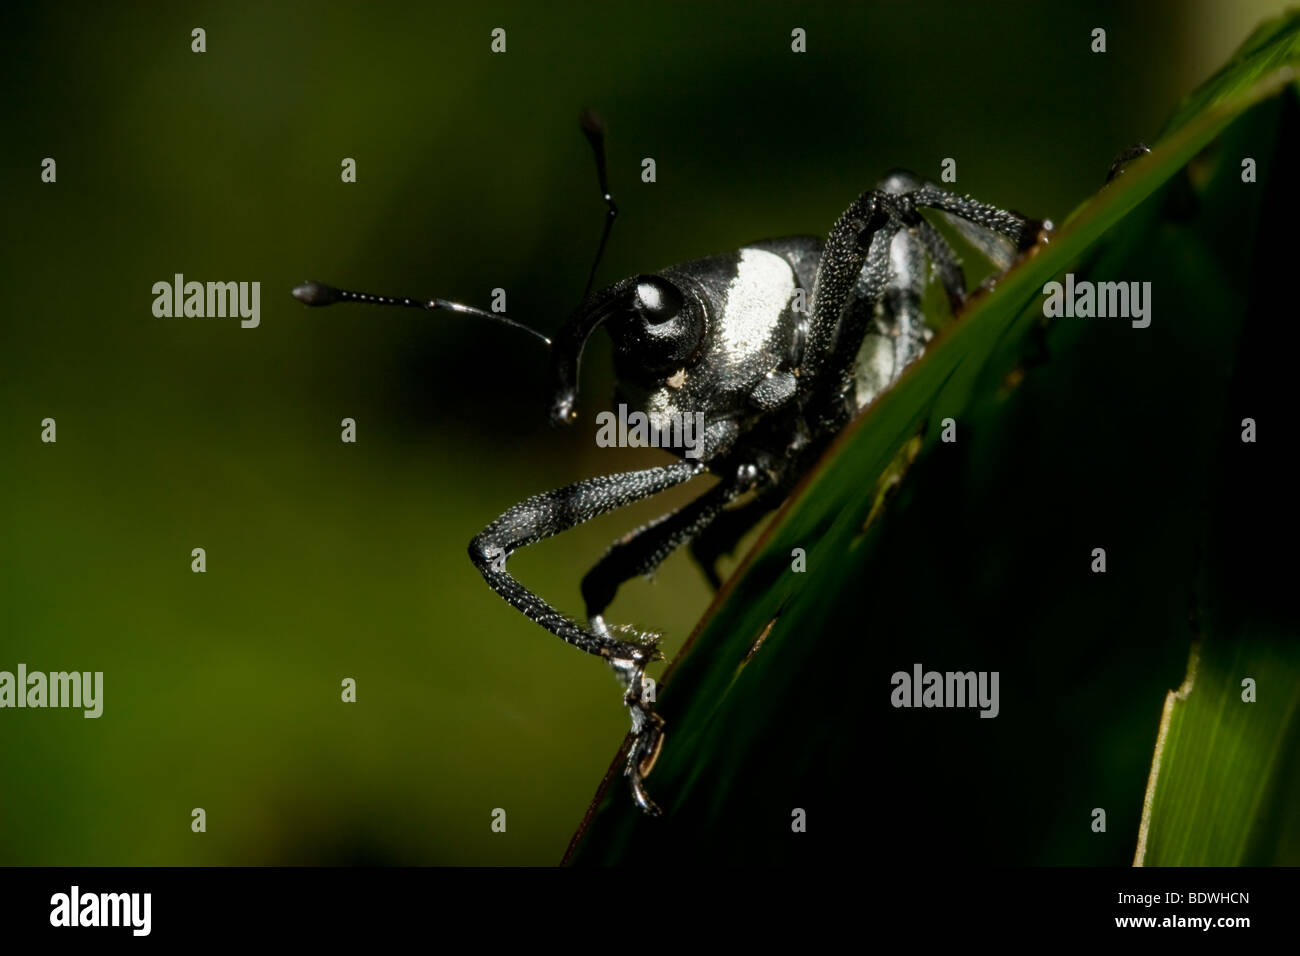 Schwarz / weiß gestreifte Käfer, Coleoptera, bestellen Familie Curculionidae. Fotografiert in den Bergen von Costa Rica. Stockfoto